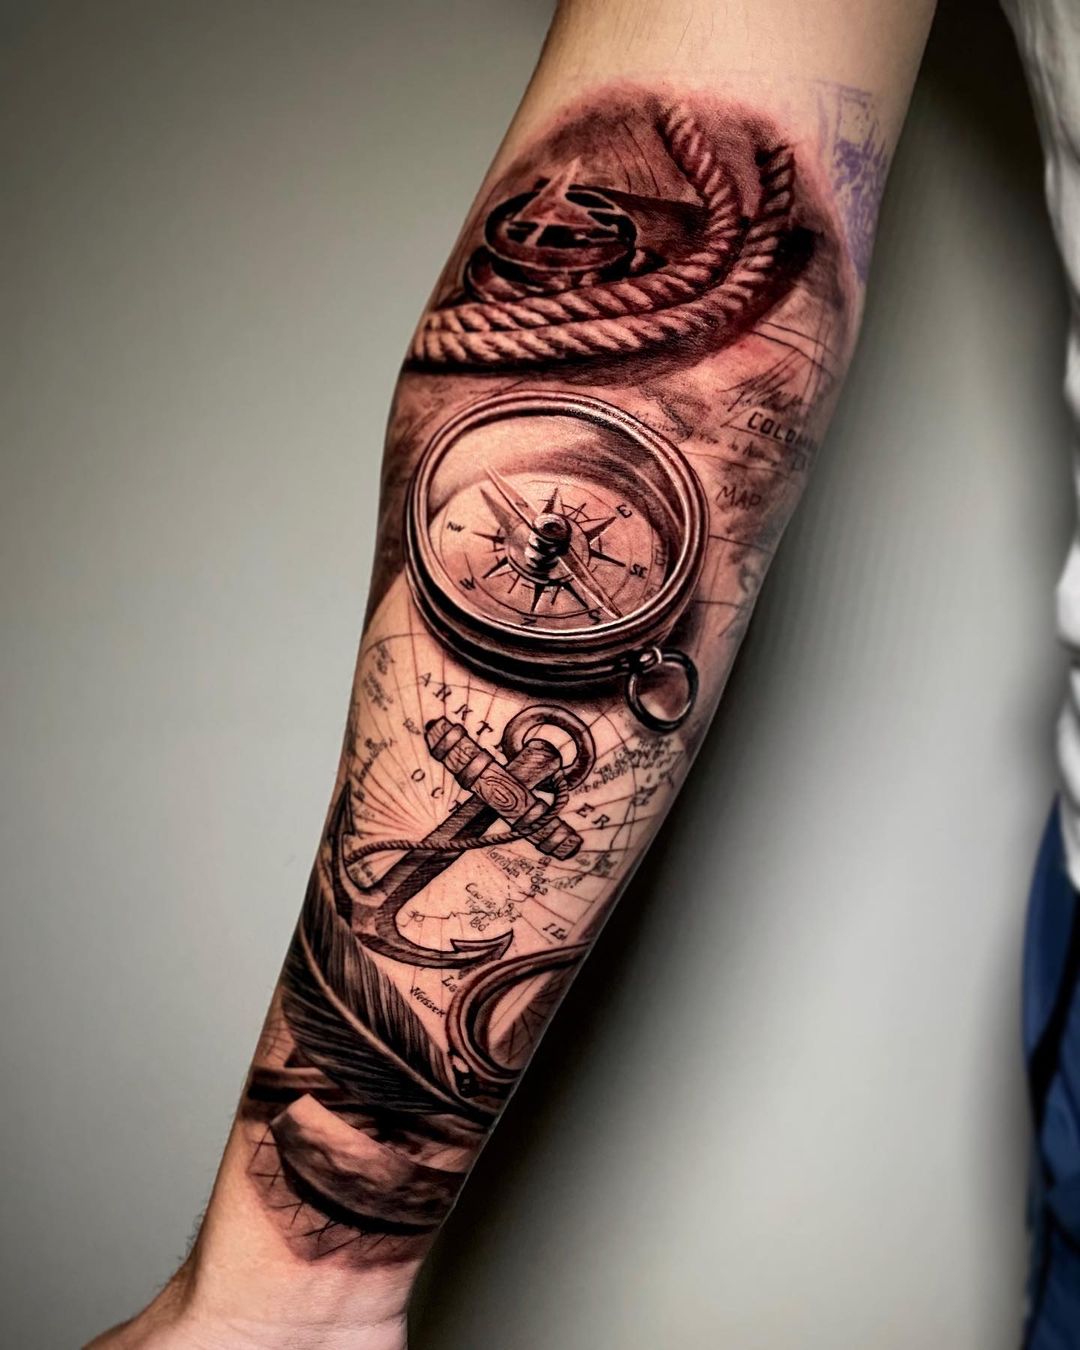 Radiant Tattoo | Compass tattoo, Journey tattoo, Compas tattoo